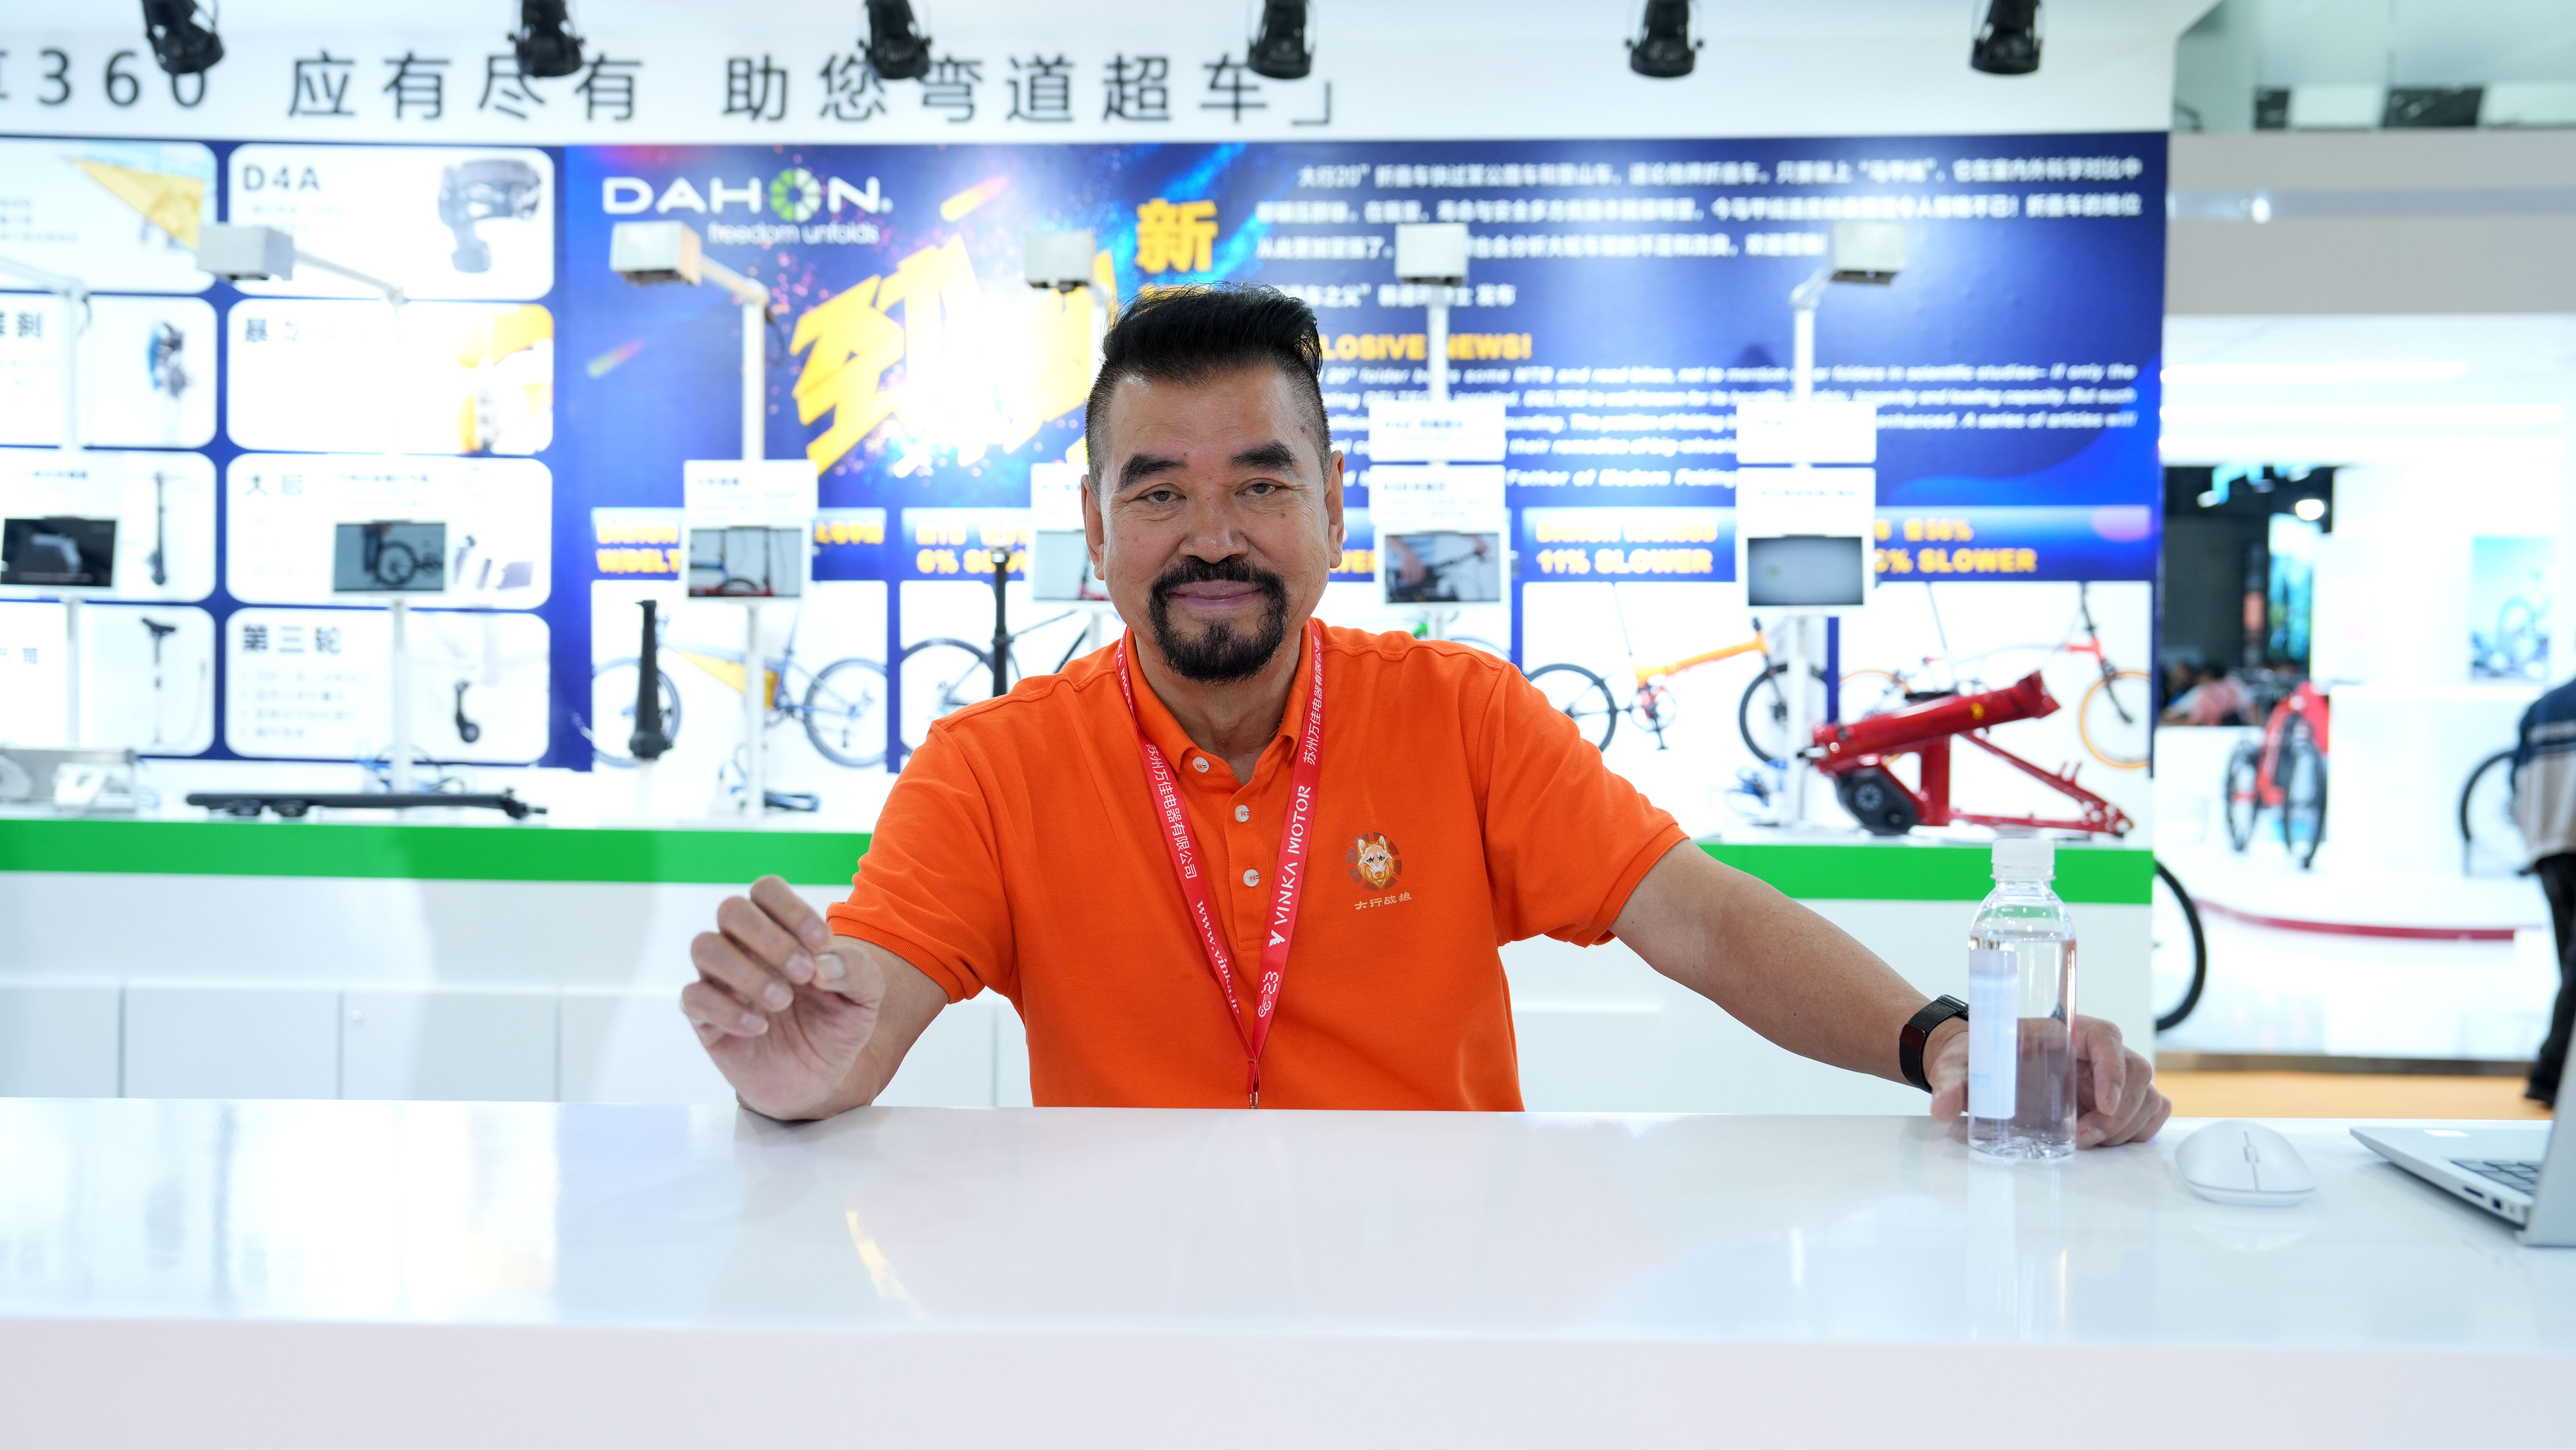 上海自行车展现场,dahon,DAHON品牌,韩德玮博士